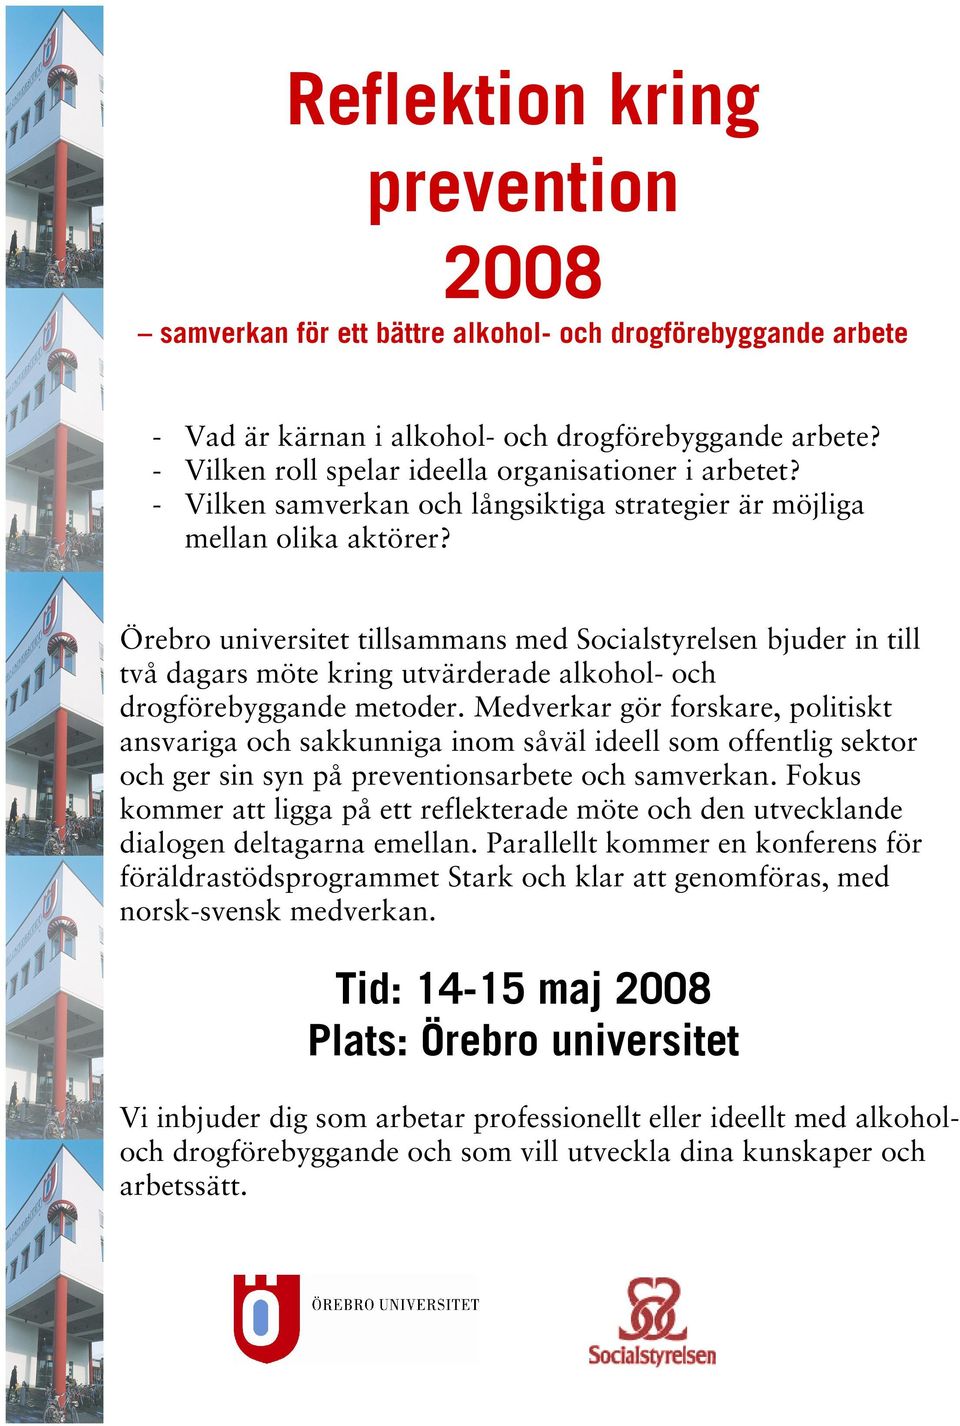 Örebro universitet tillsammans med Socialstyrelsen bjuder in till två dagars möte kring utvärderade alkohol- och drogförebyggande metoder.